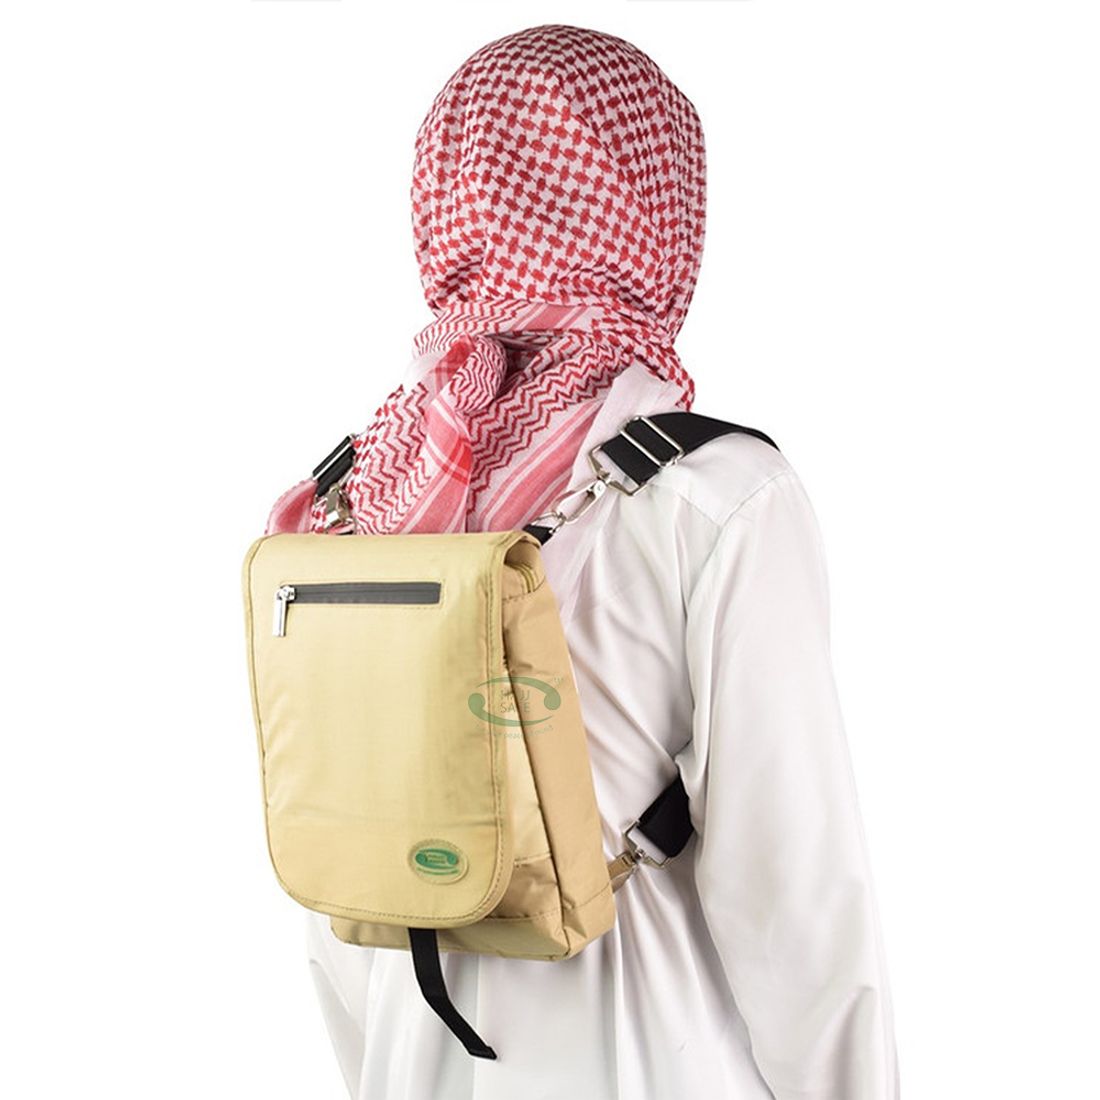 Hajj Safe™ Hajj & Umrah – Side and Backpack [Anti-theft & Secure]